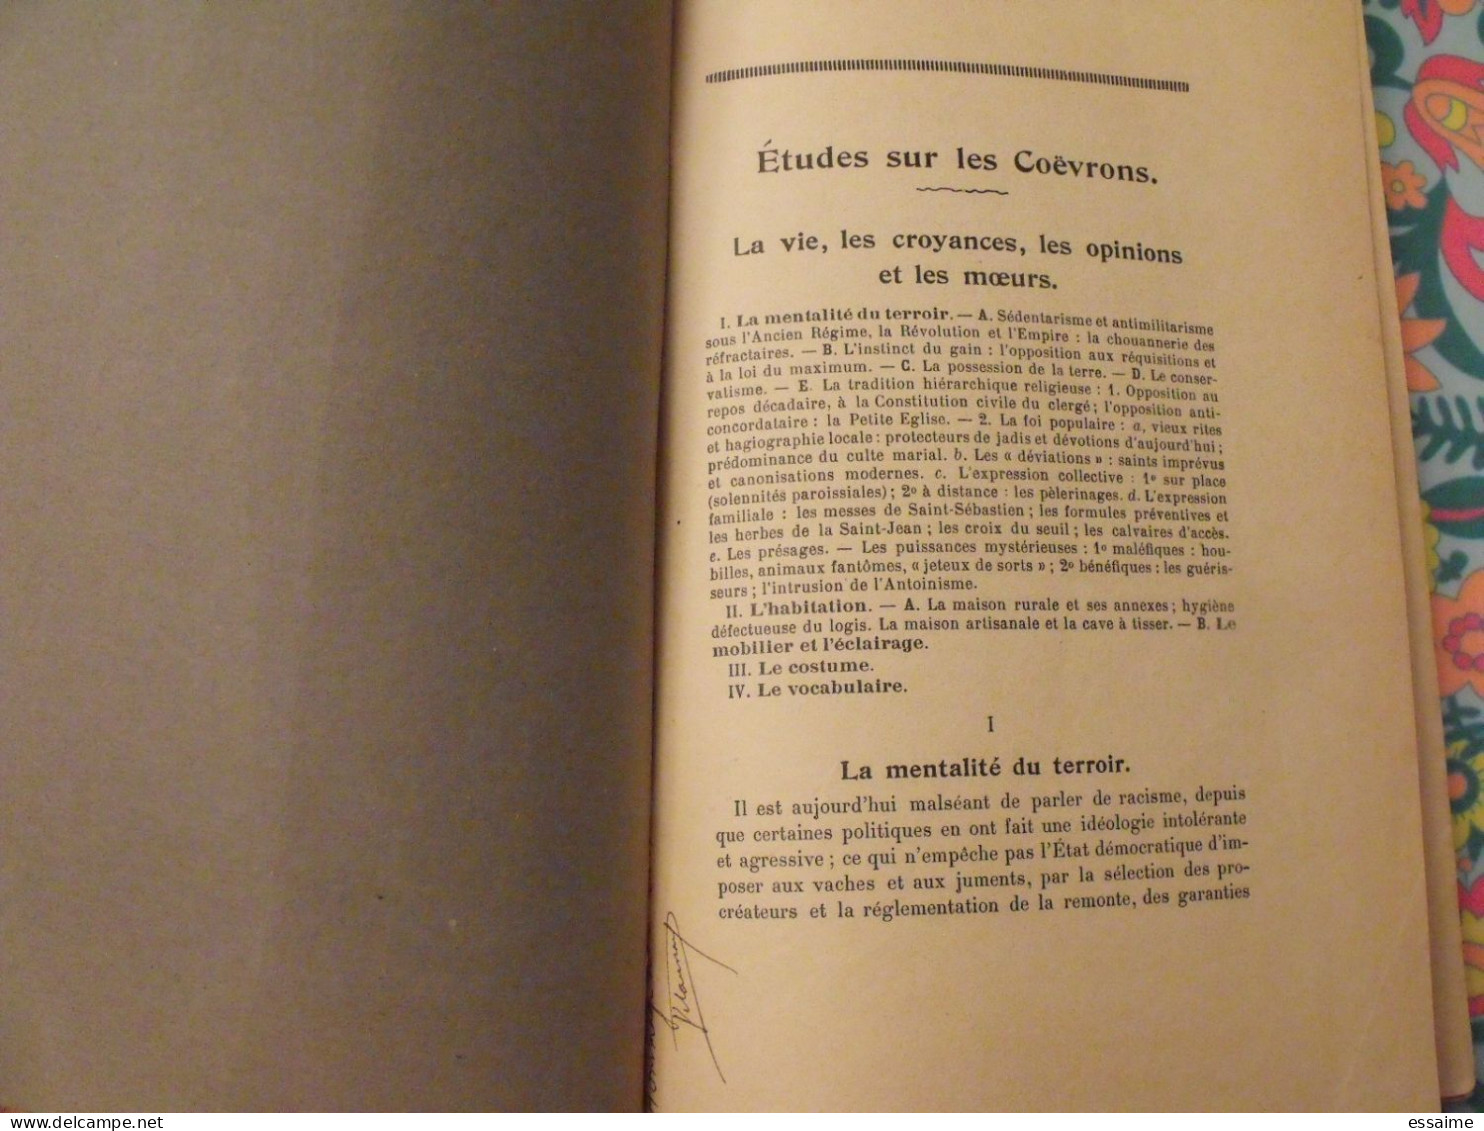 Etudes Sur Les Coëvrons. La Vie, Les Croyances Les Opinions Et Les Moeurs. Delaunay. Goupil, Laval, 1956 - Pays De Loire